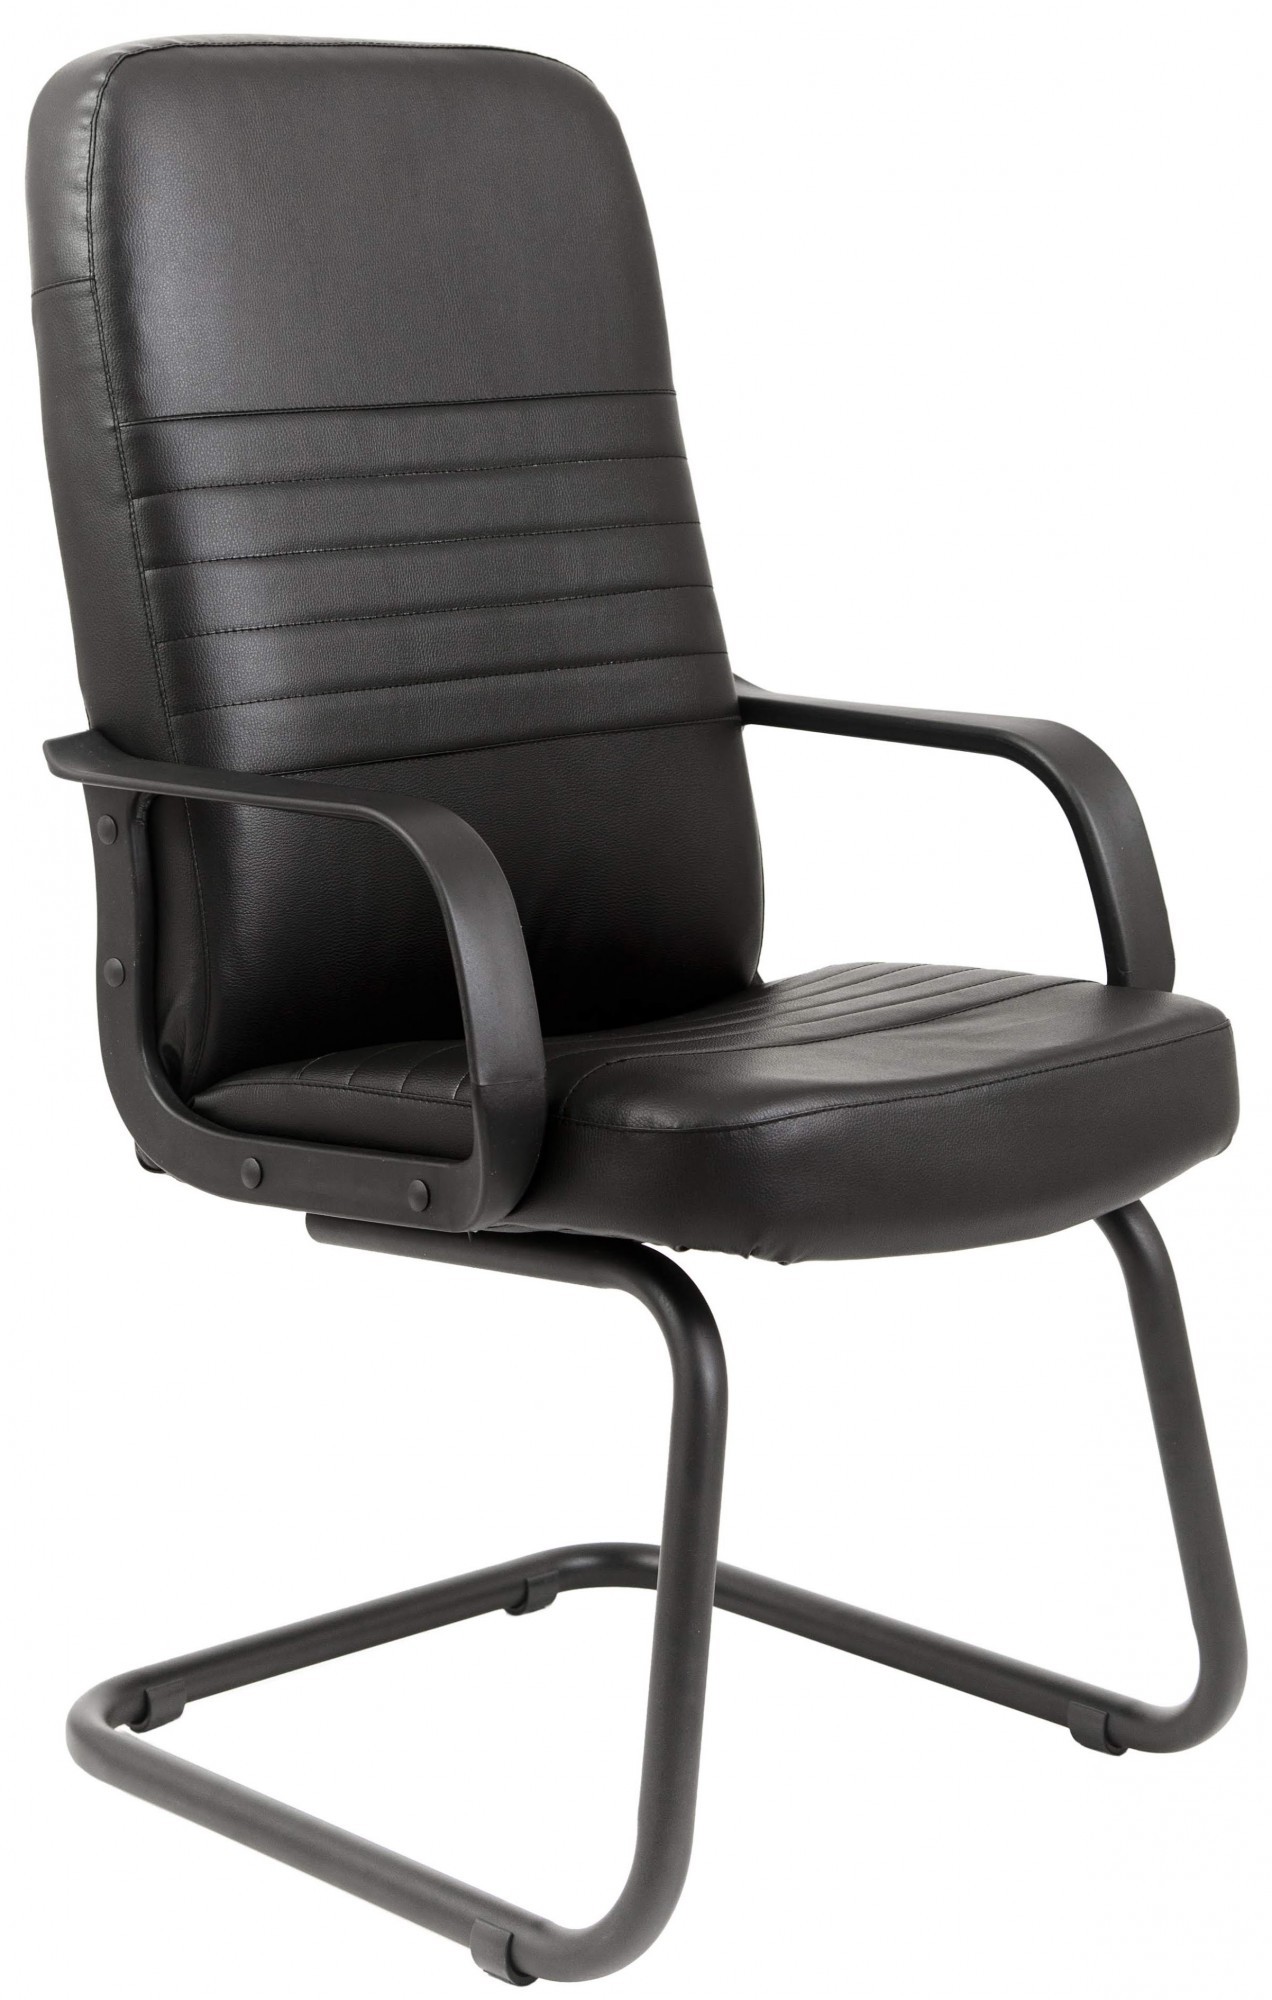 Стул стационарный. Кресло офисное Richman. Кресло для конференций Kaman SUNON Inc. черное на полесьях. Кресло на полозьях Opera CF. Кресло офисное стационарное.